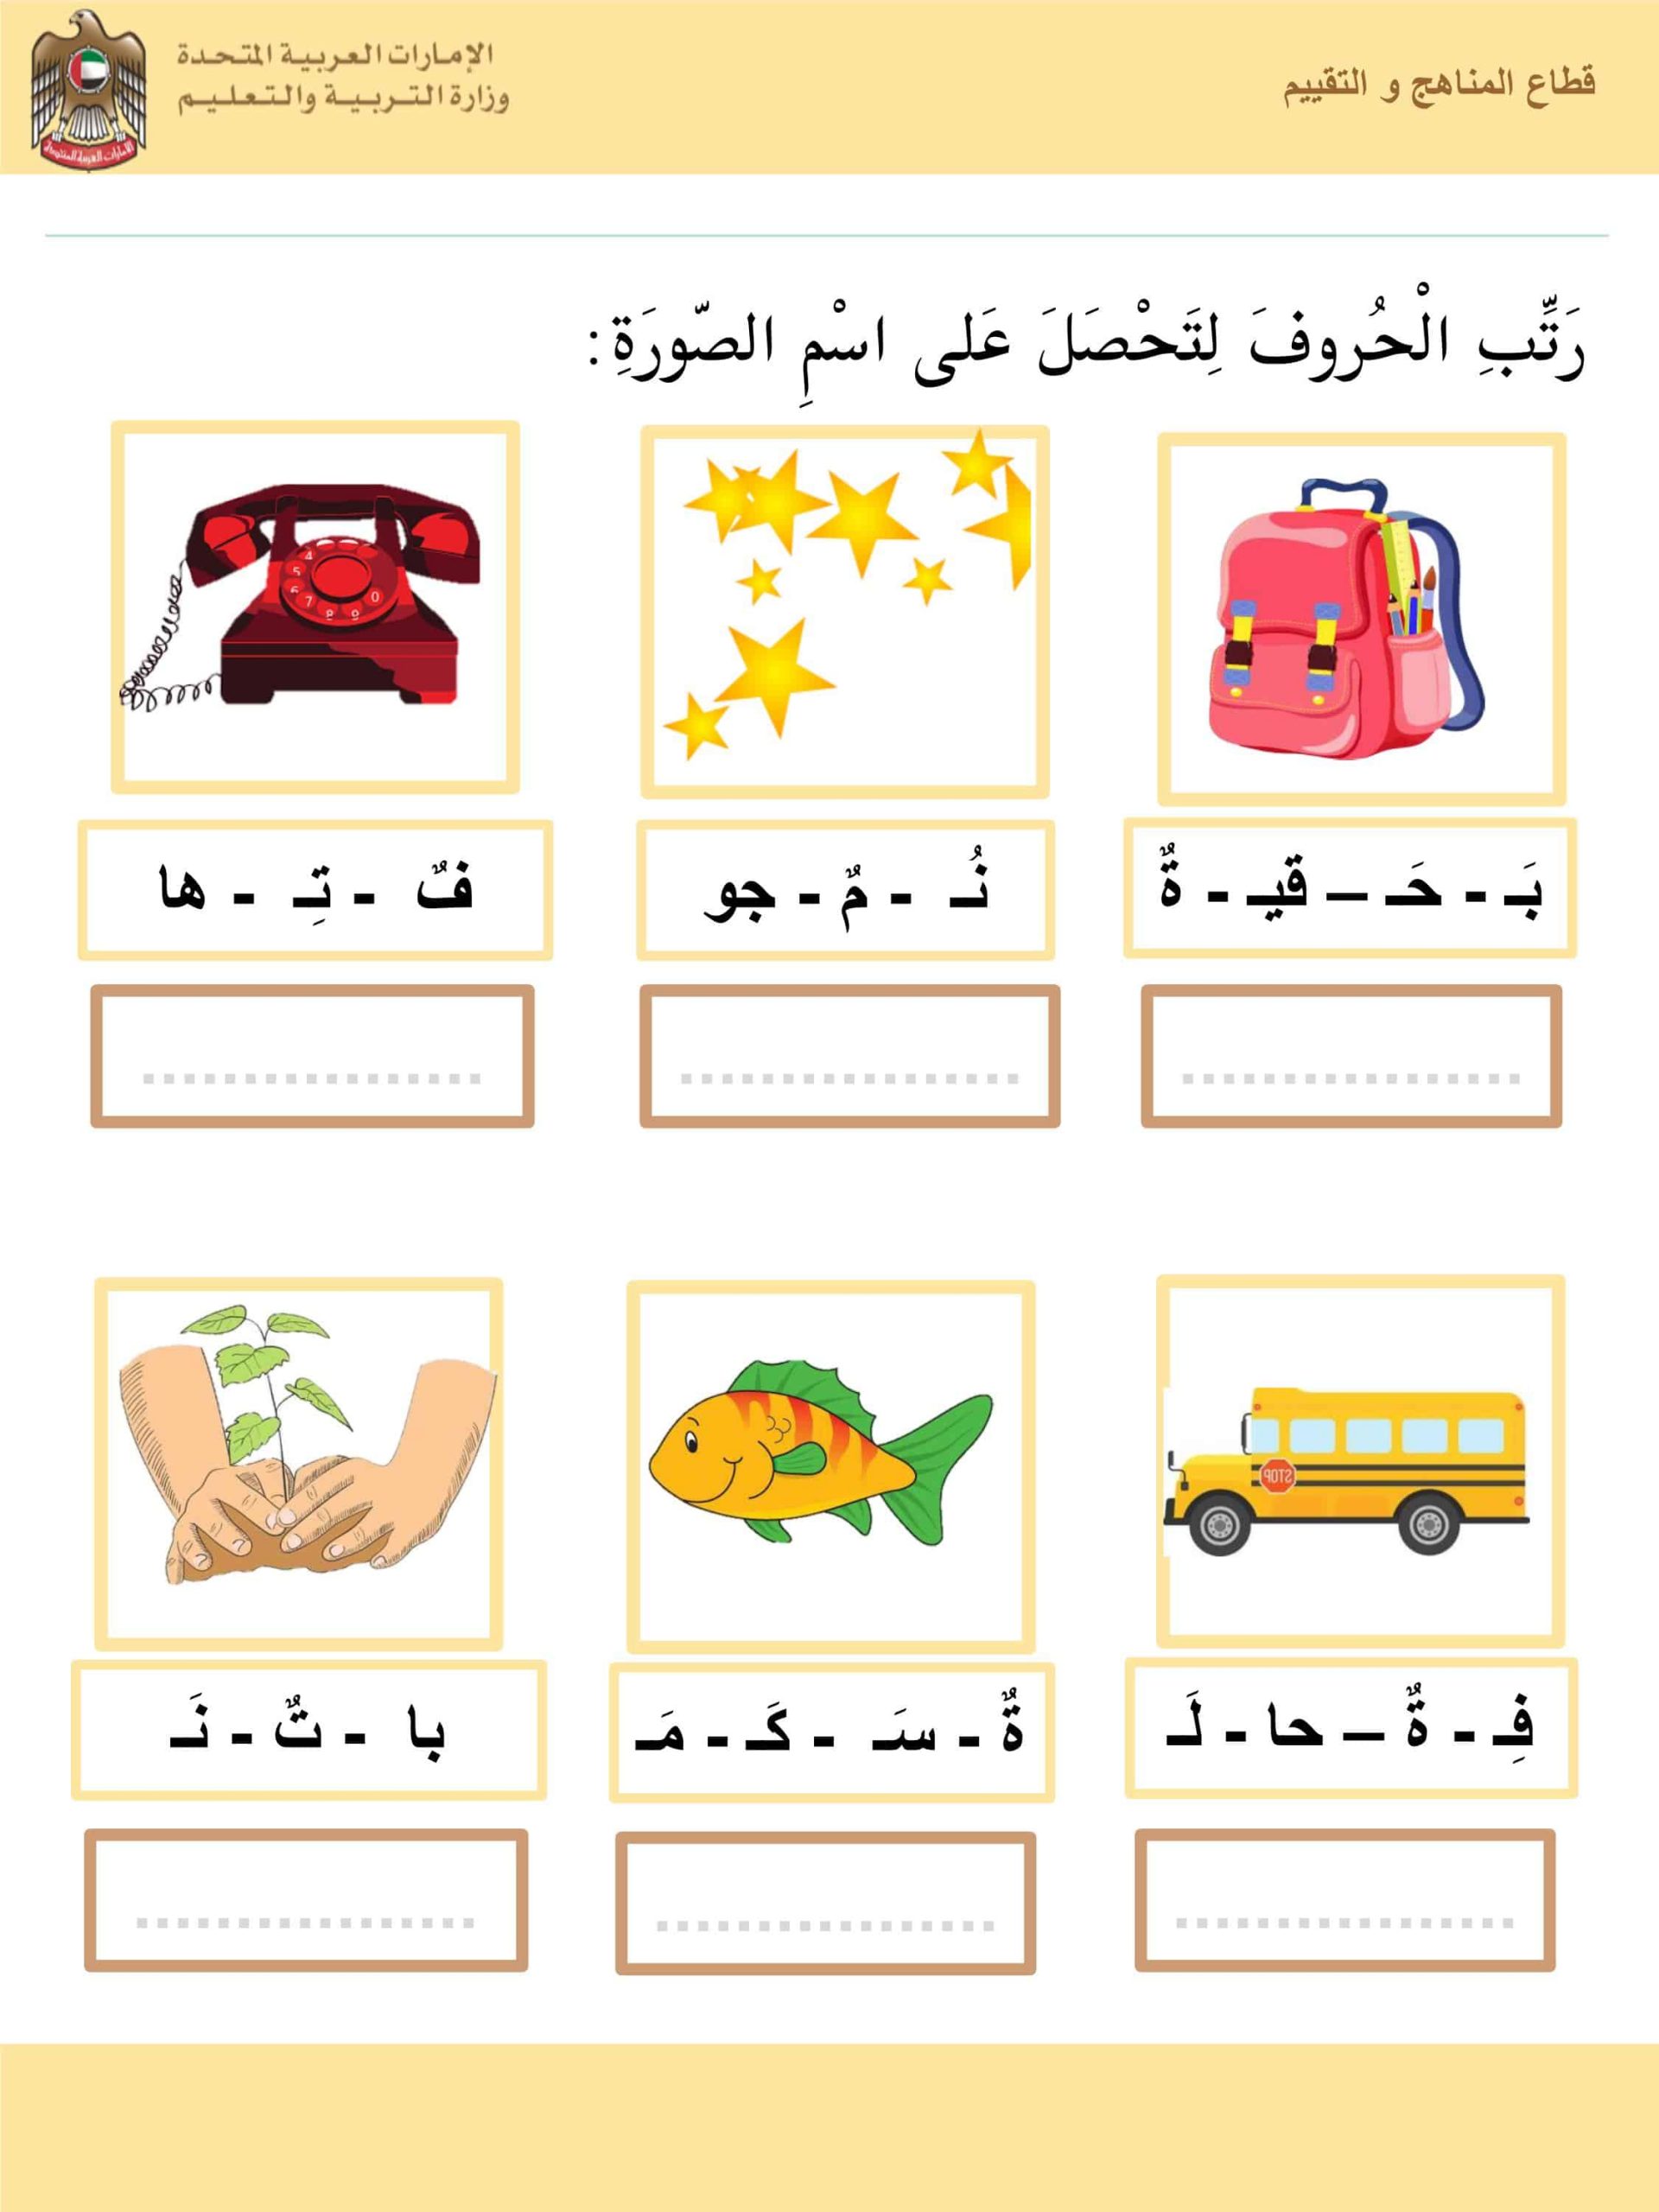 أوراق عمل مراجعة عامة الفصل الدراسي الثالث مادة اللغة العربية 